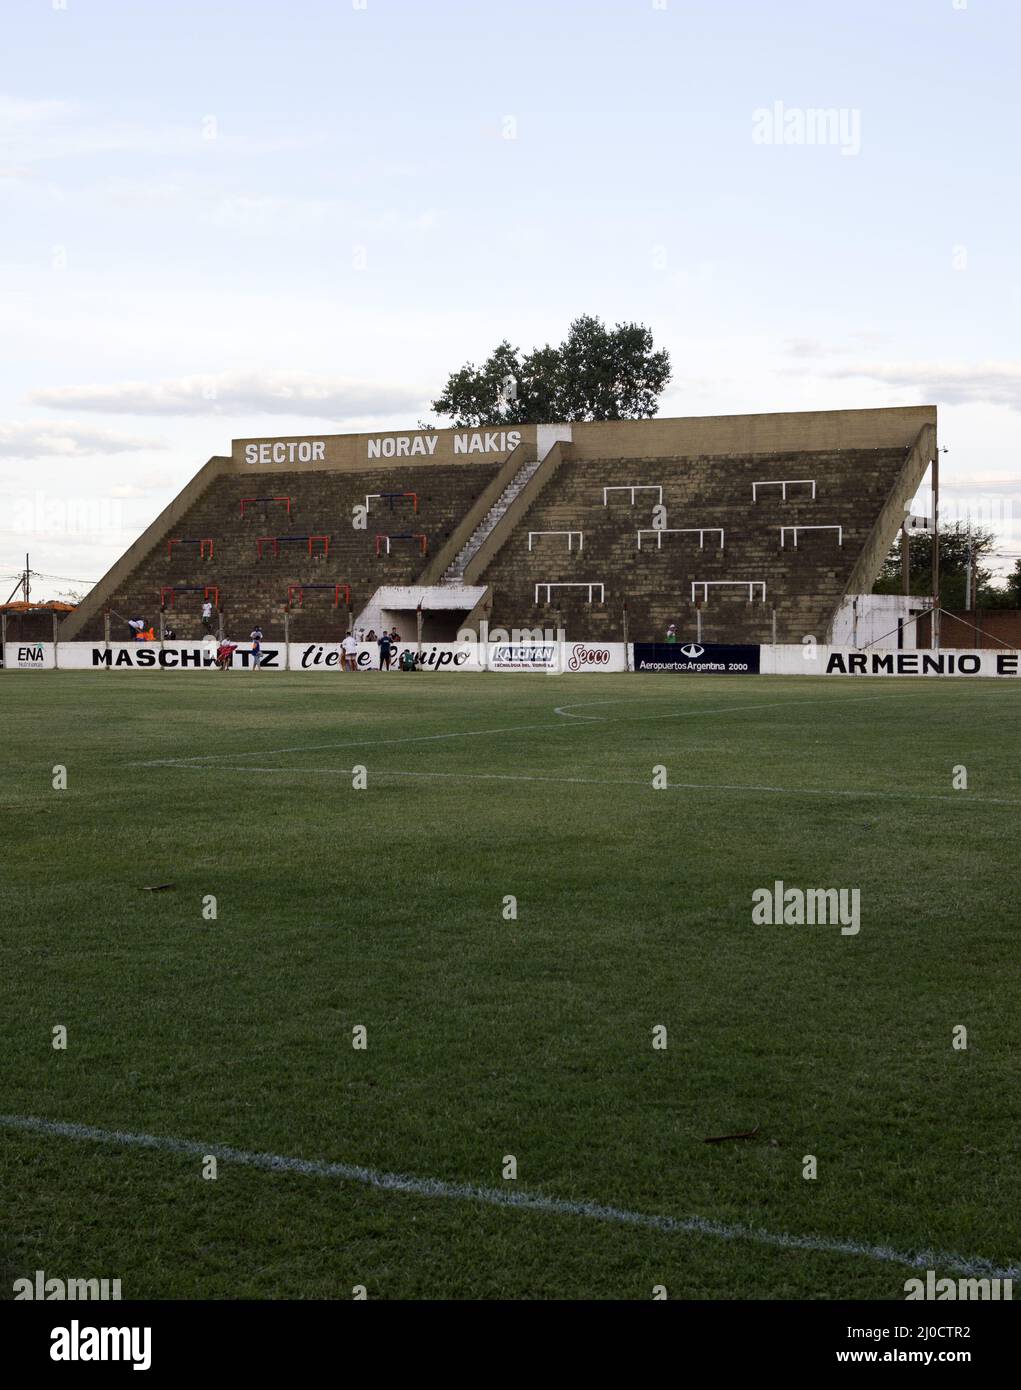 Armenio escobar stadium Stock Photo